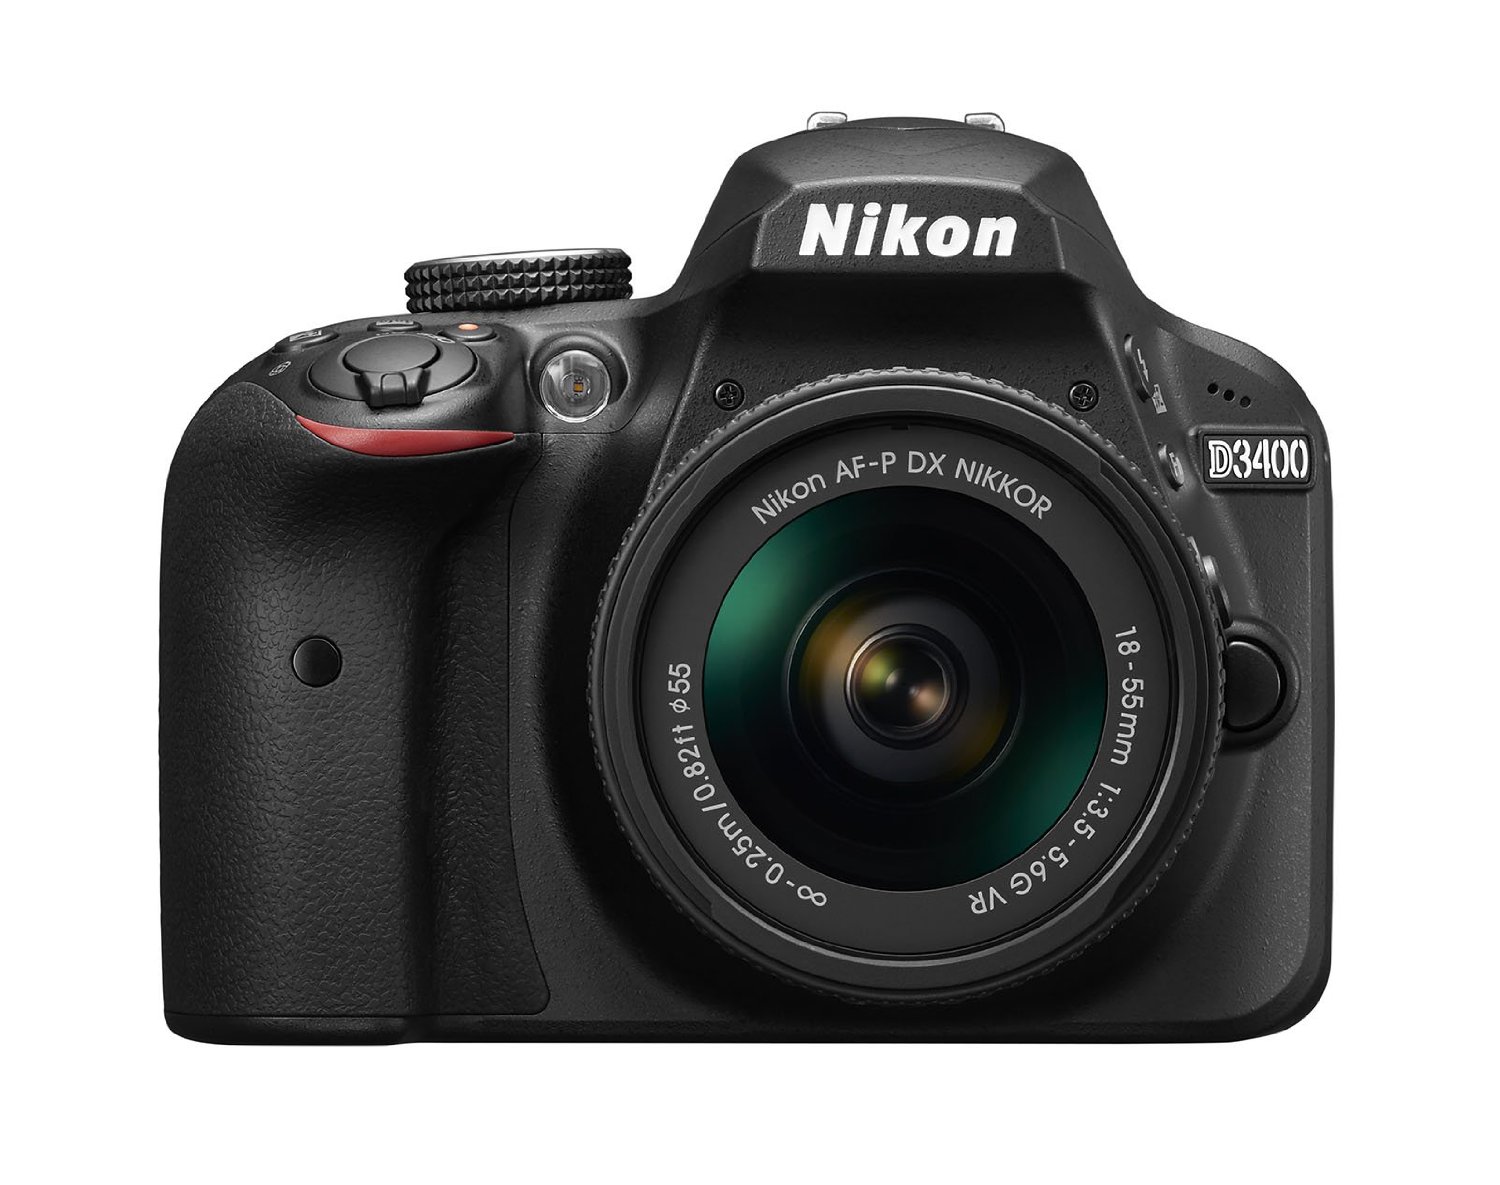 beginner dslr Nikon D3400, best camera for beginners, best dslr for beginners, best starter dslr nikon